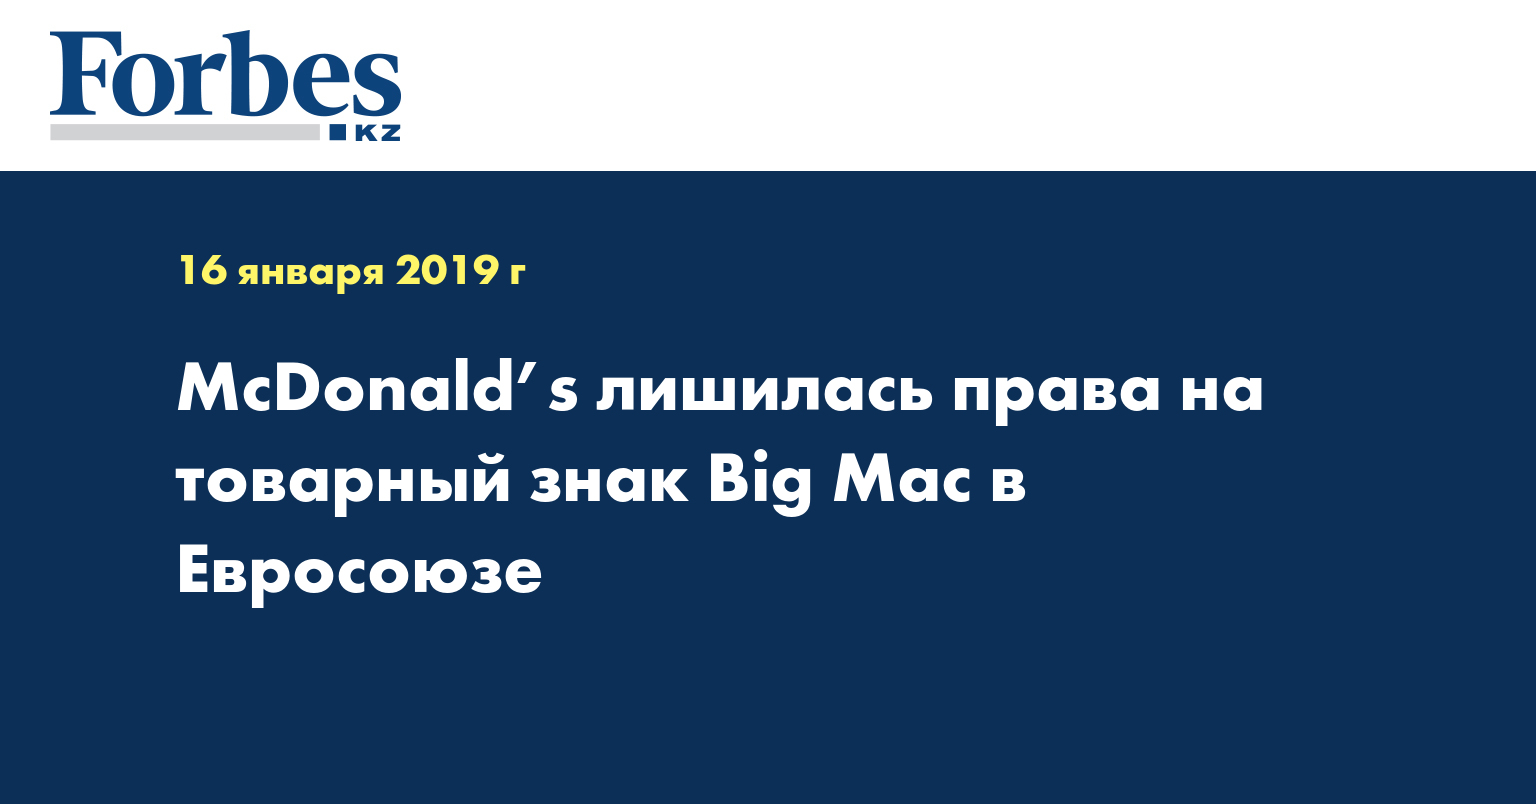 McDonald’s лишилась права на товарный знак Big Mac в Евросоюзе